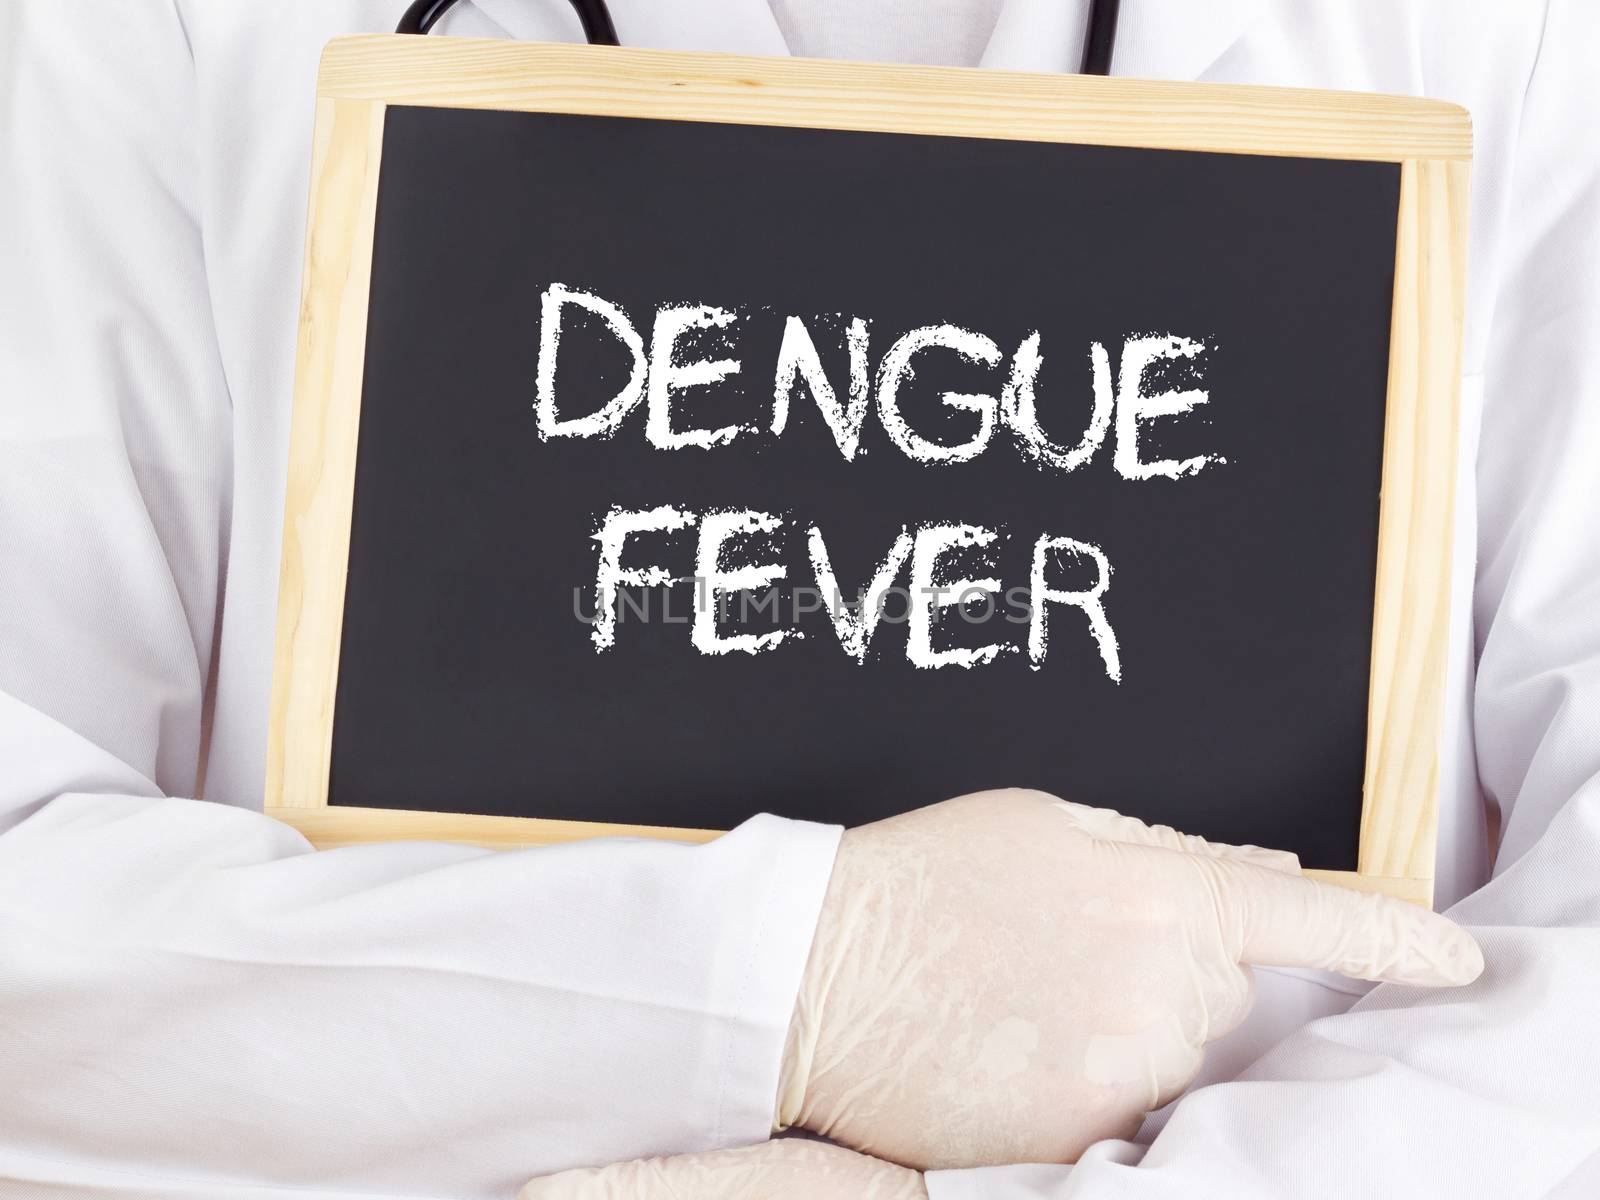 Doctor shows information on blackboard: Dengue fever